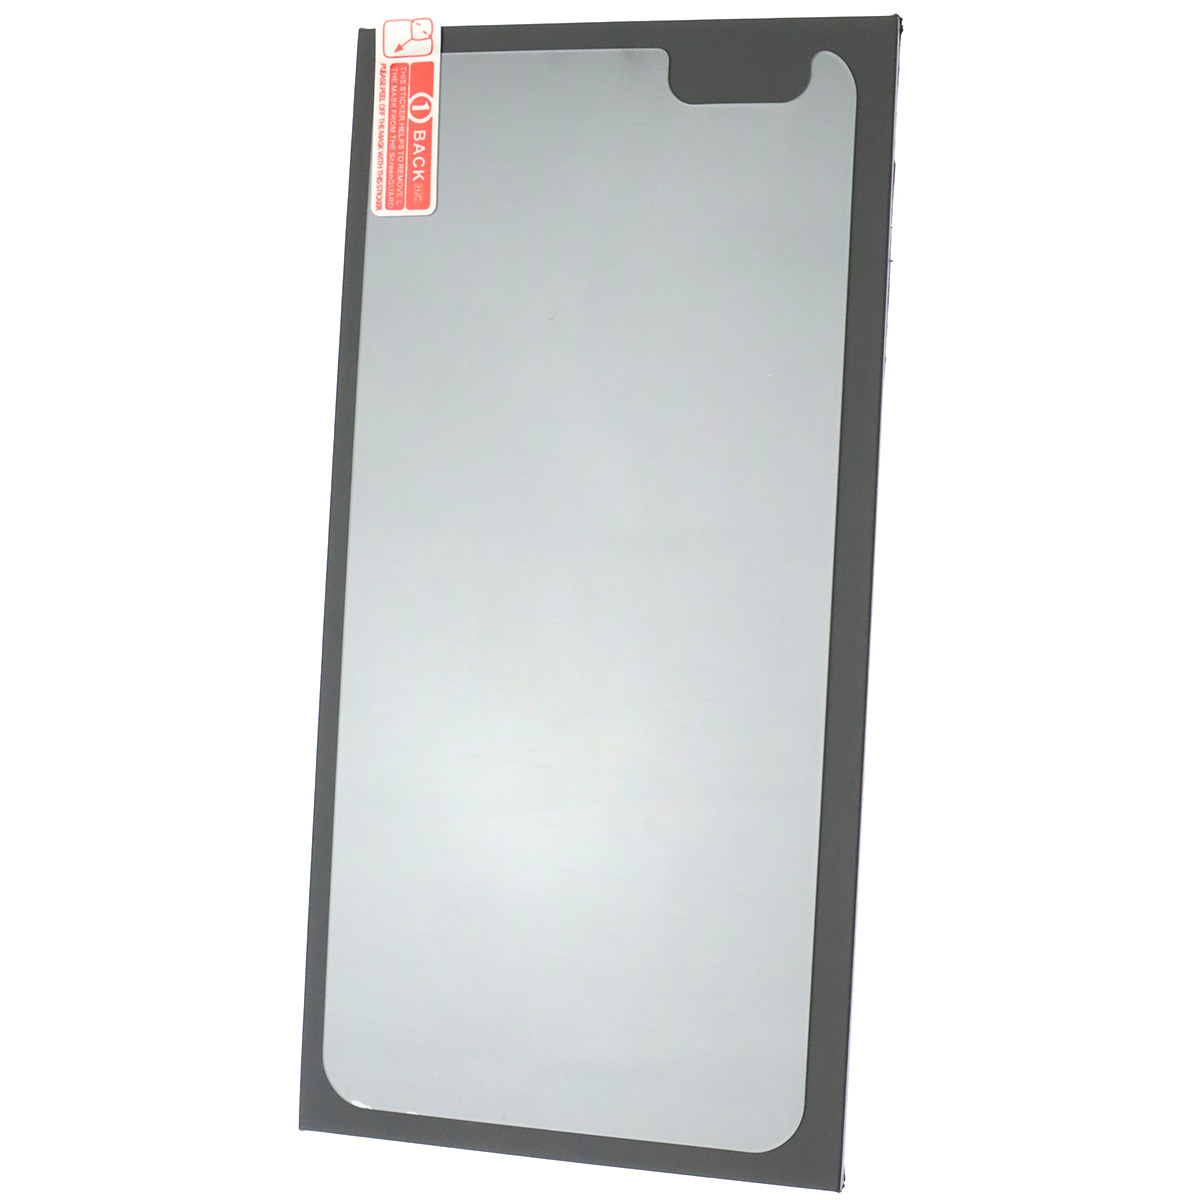 Защитное стекло для APPLE iPhone 6 Plus, на заднюю крышку, цвет прозрачный